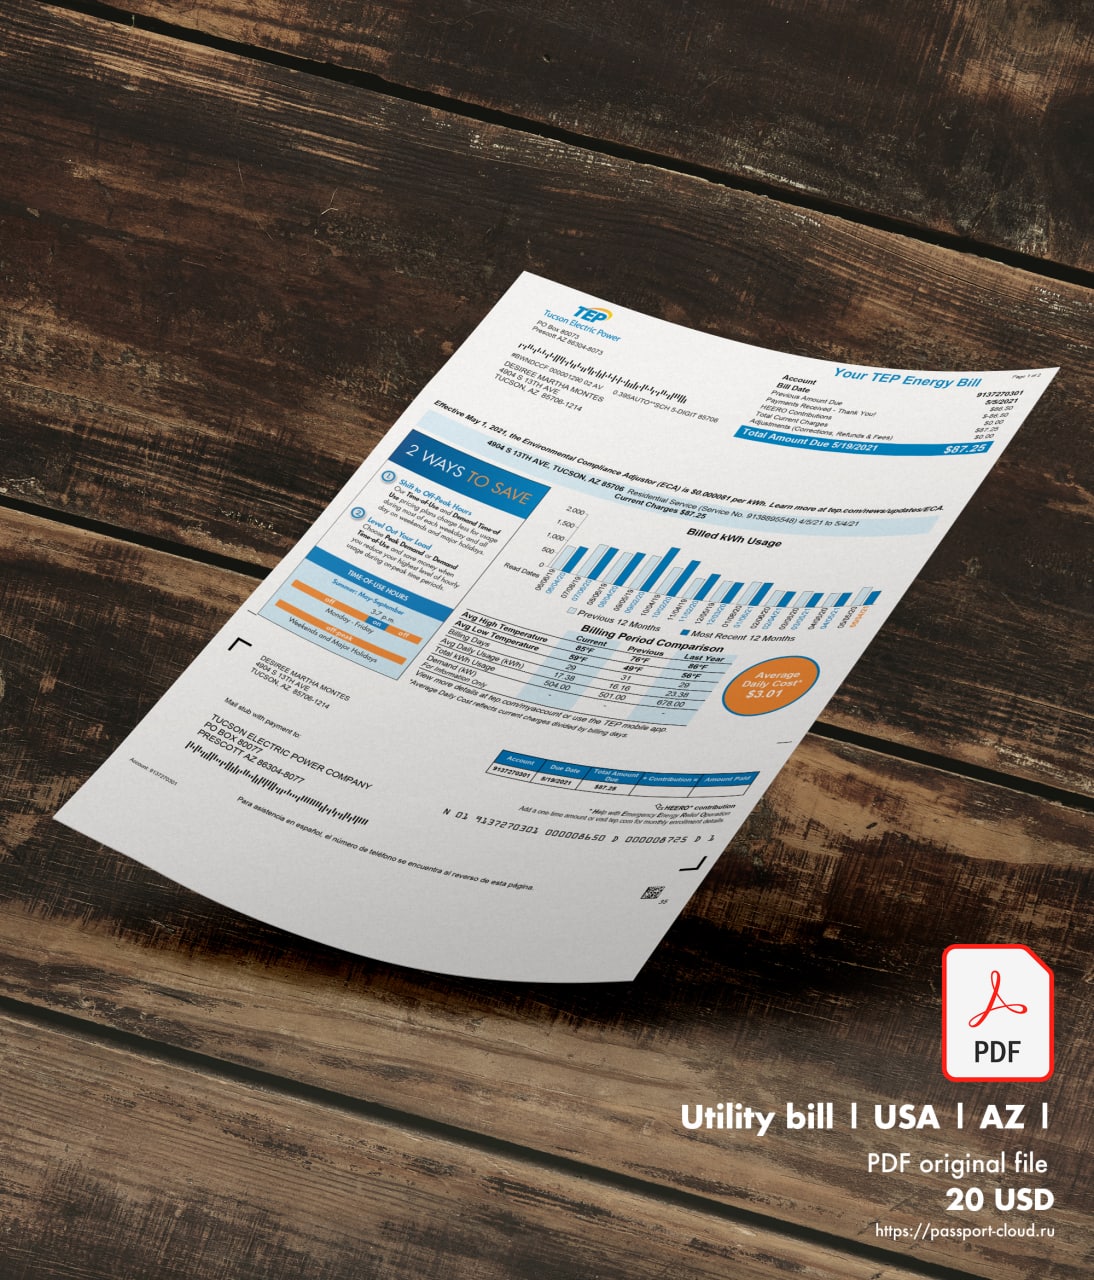 Utility bill | TEP | USA | AZ-0